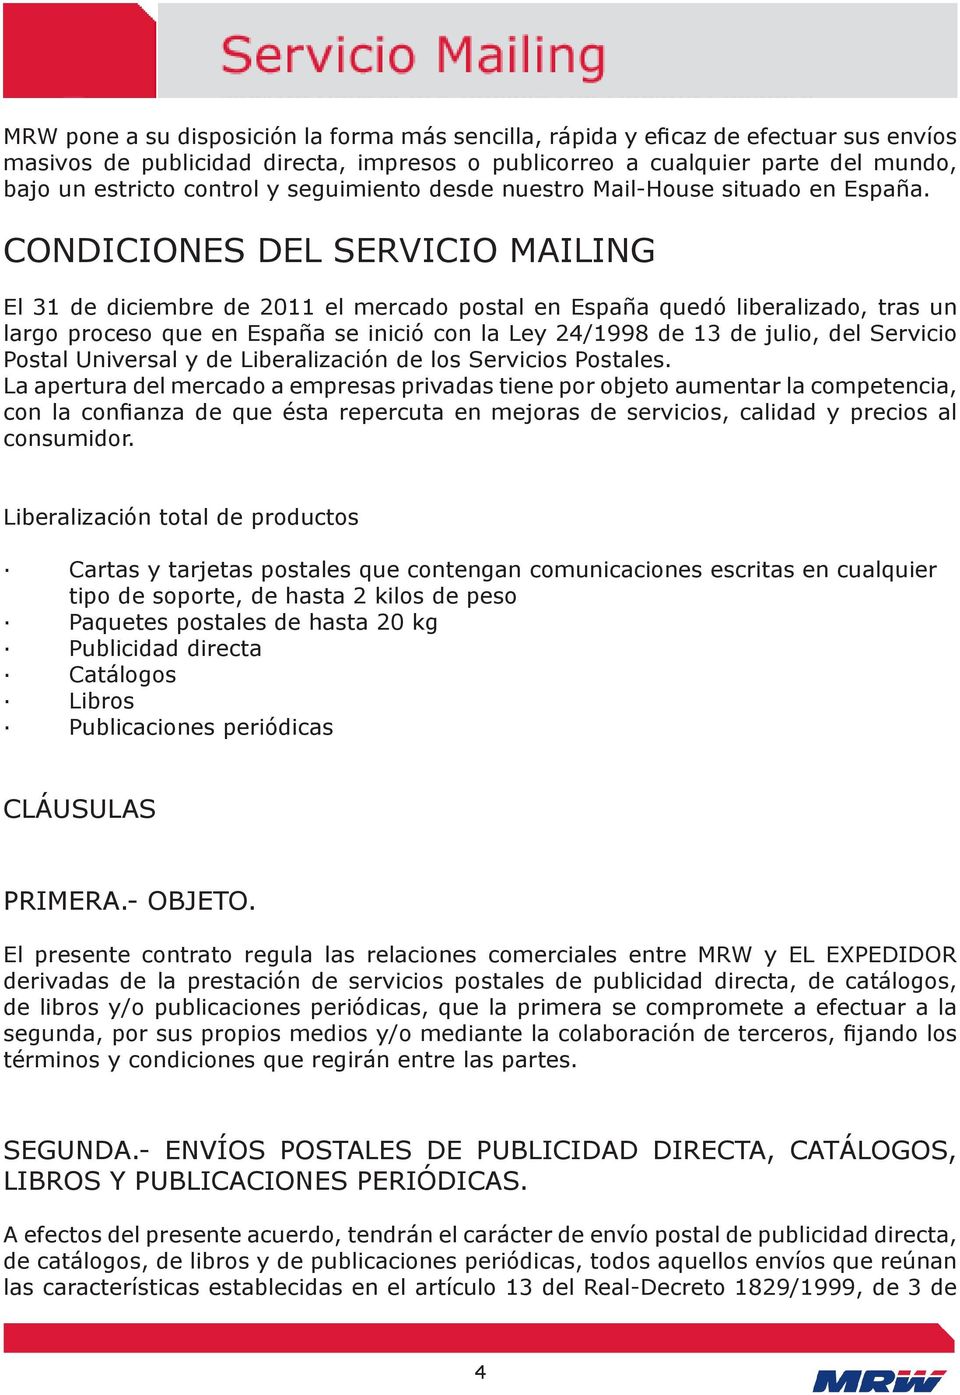 CONDICIONES DEL SERVICIO MAILING El 31 de diciembre de 2011 el mercado postal en España quedó liberalizado, tras un largo proceso que en España se inició con la Ley 24/1998 de 13 de julio, del